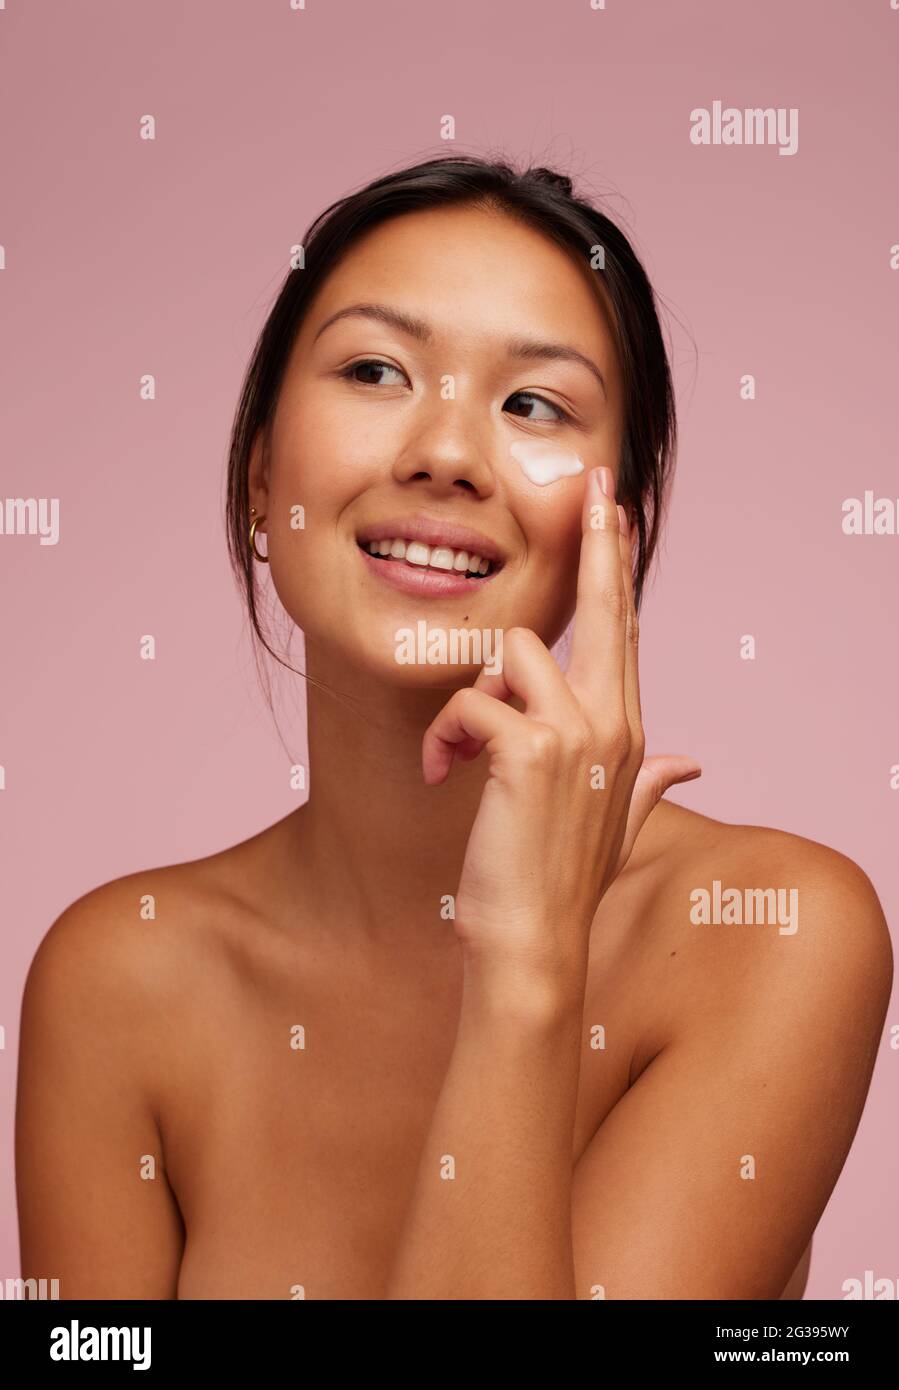 Retrato de una mujer hermosa aplicando crema hidratante en su cara. Mujer usando producto de belleza en su piel facial y mirando hacia fuera. Foto de stock